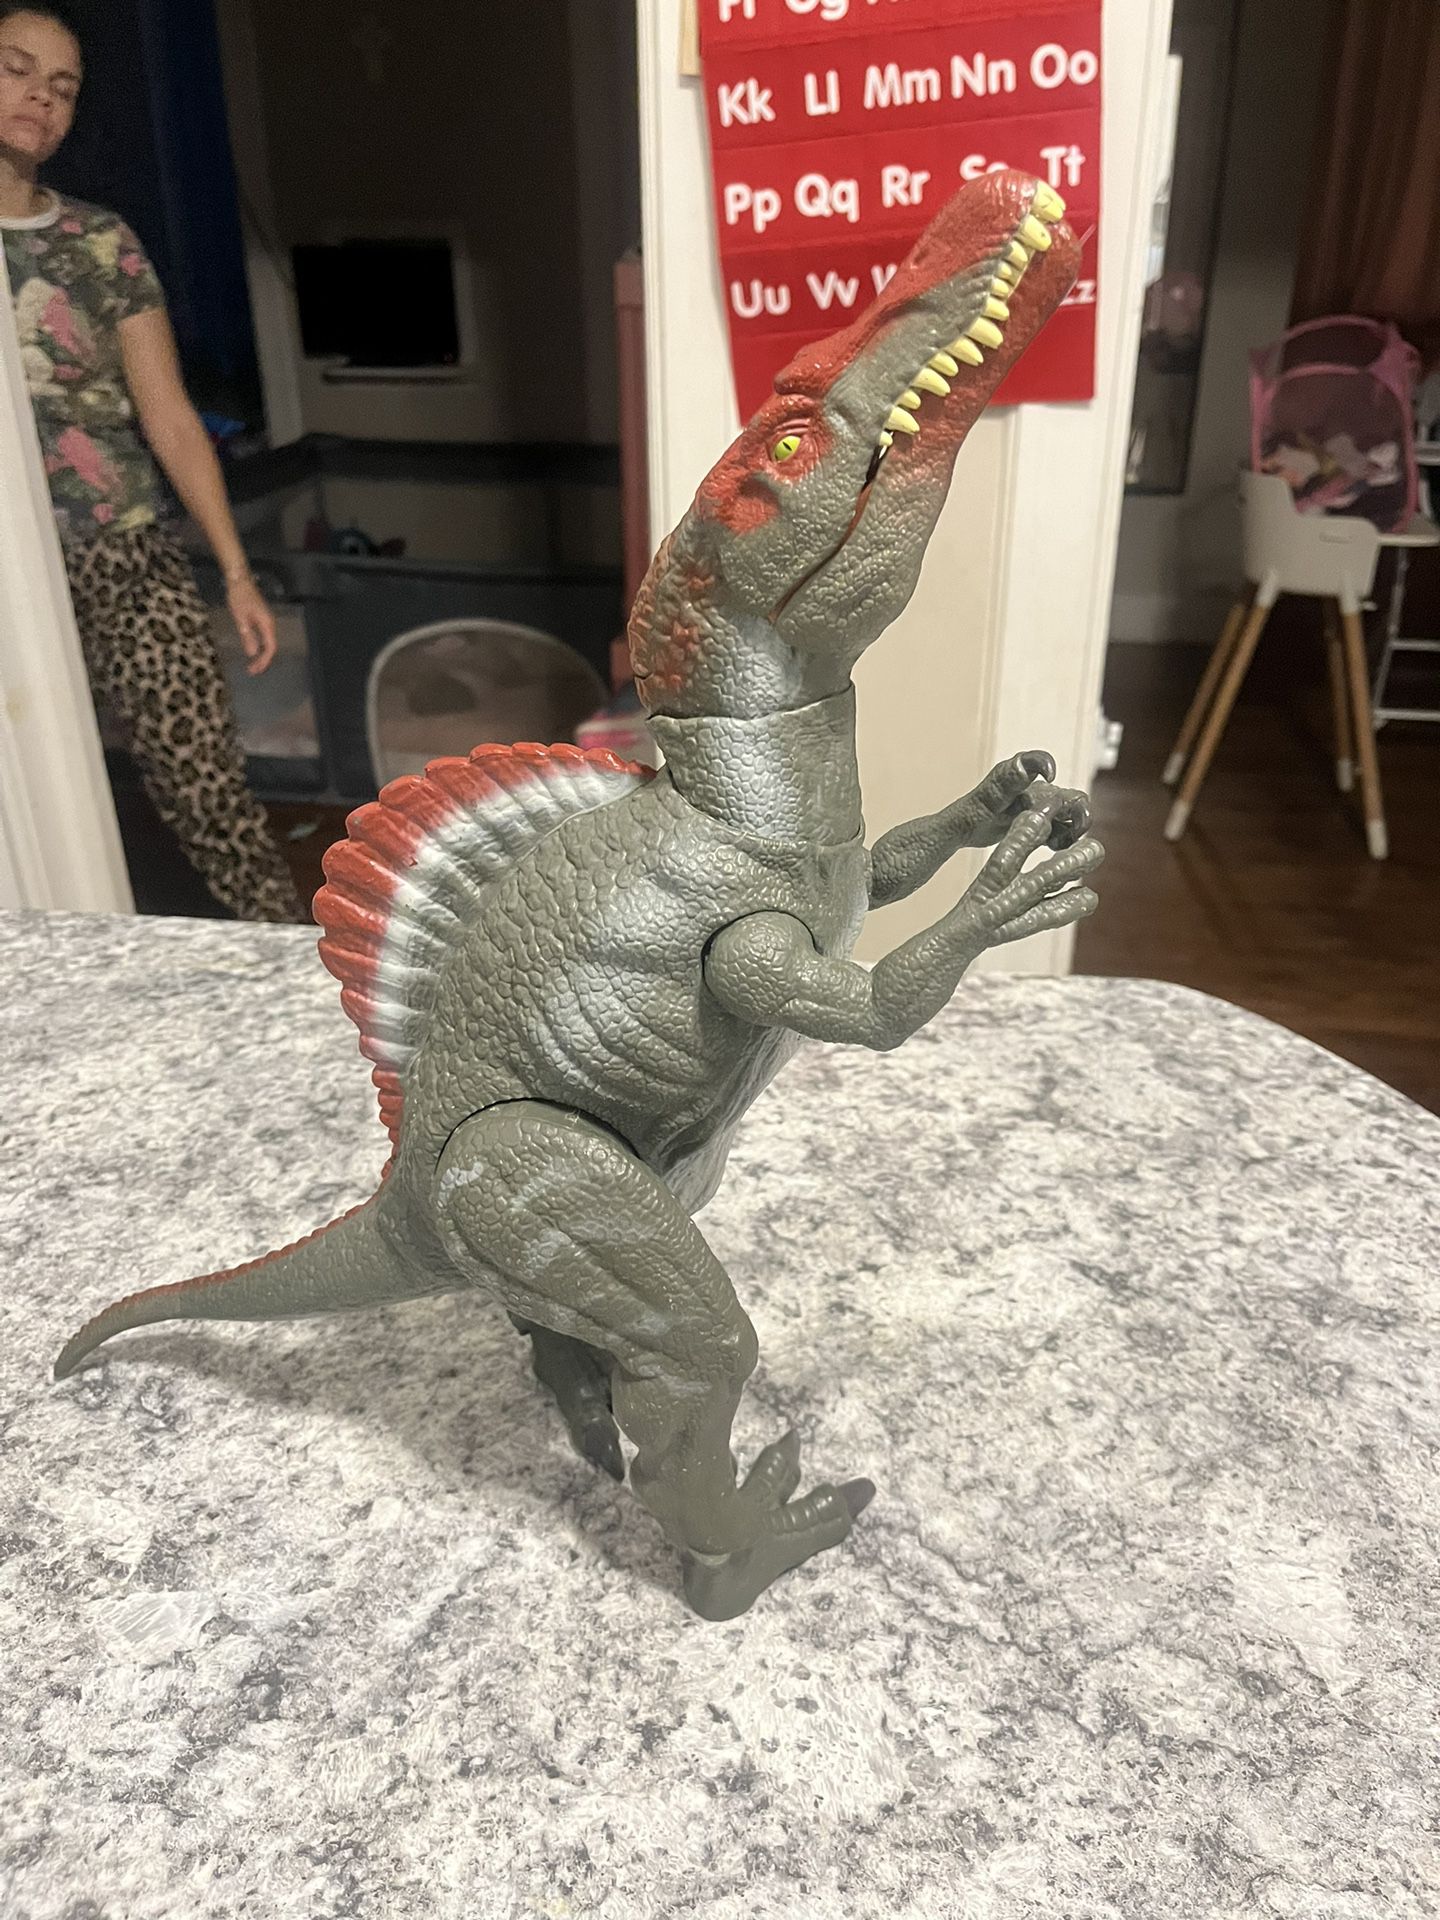 Jurassic Park spinosaurus